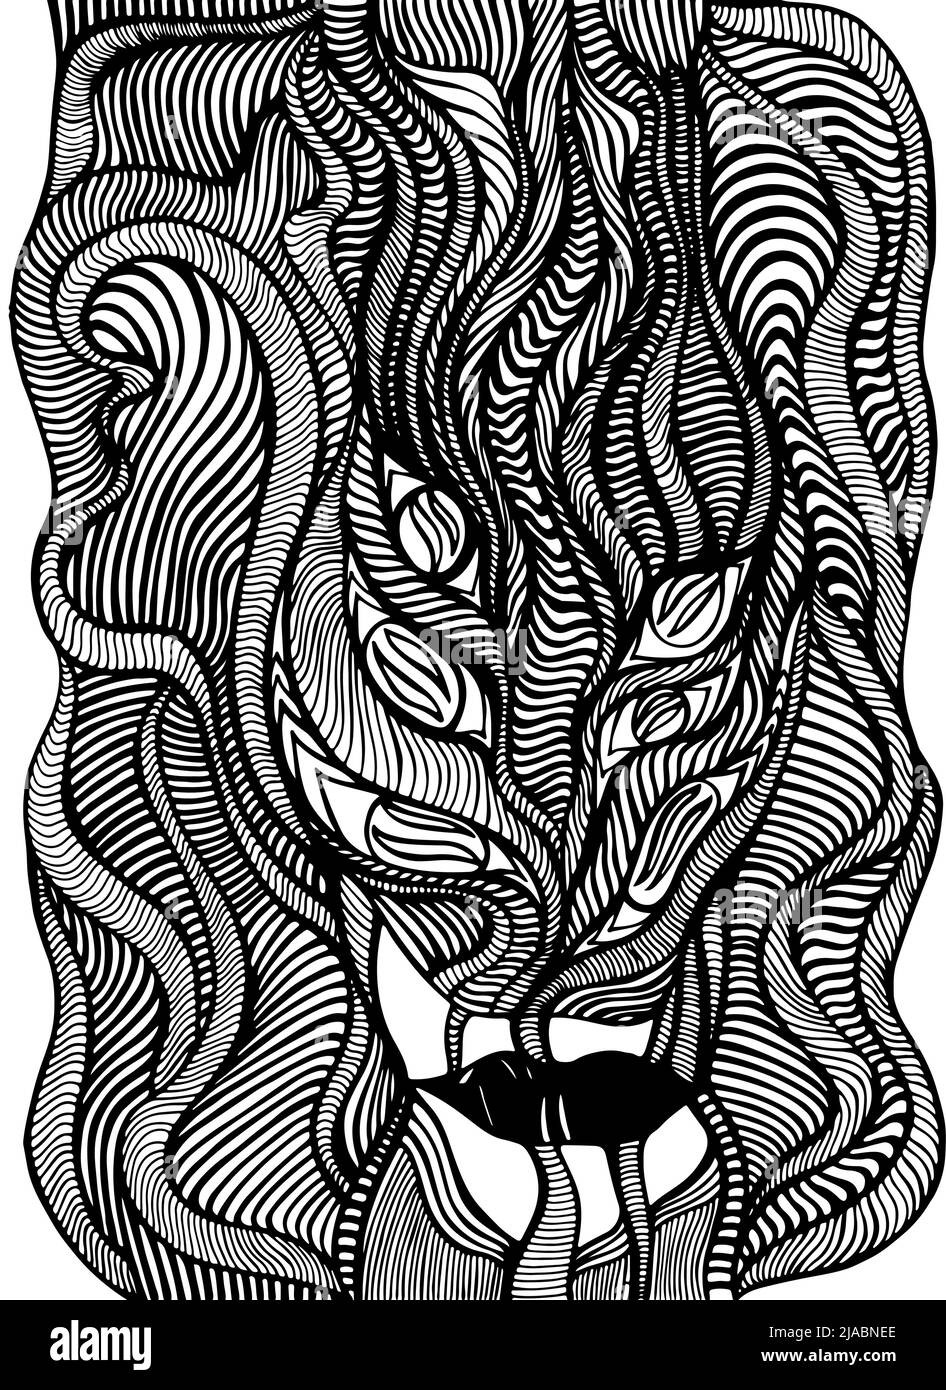 Schwarz-weißes psychedelisches Gesicht mit dämonischen Augen, von verrückten Wellen Muster Malseite. Abstrakter dekorativer Hintergrund mit anthropomorphem Gesicht. Stock Vektor